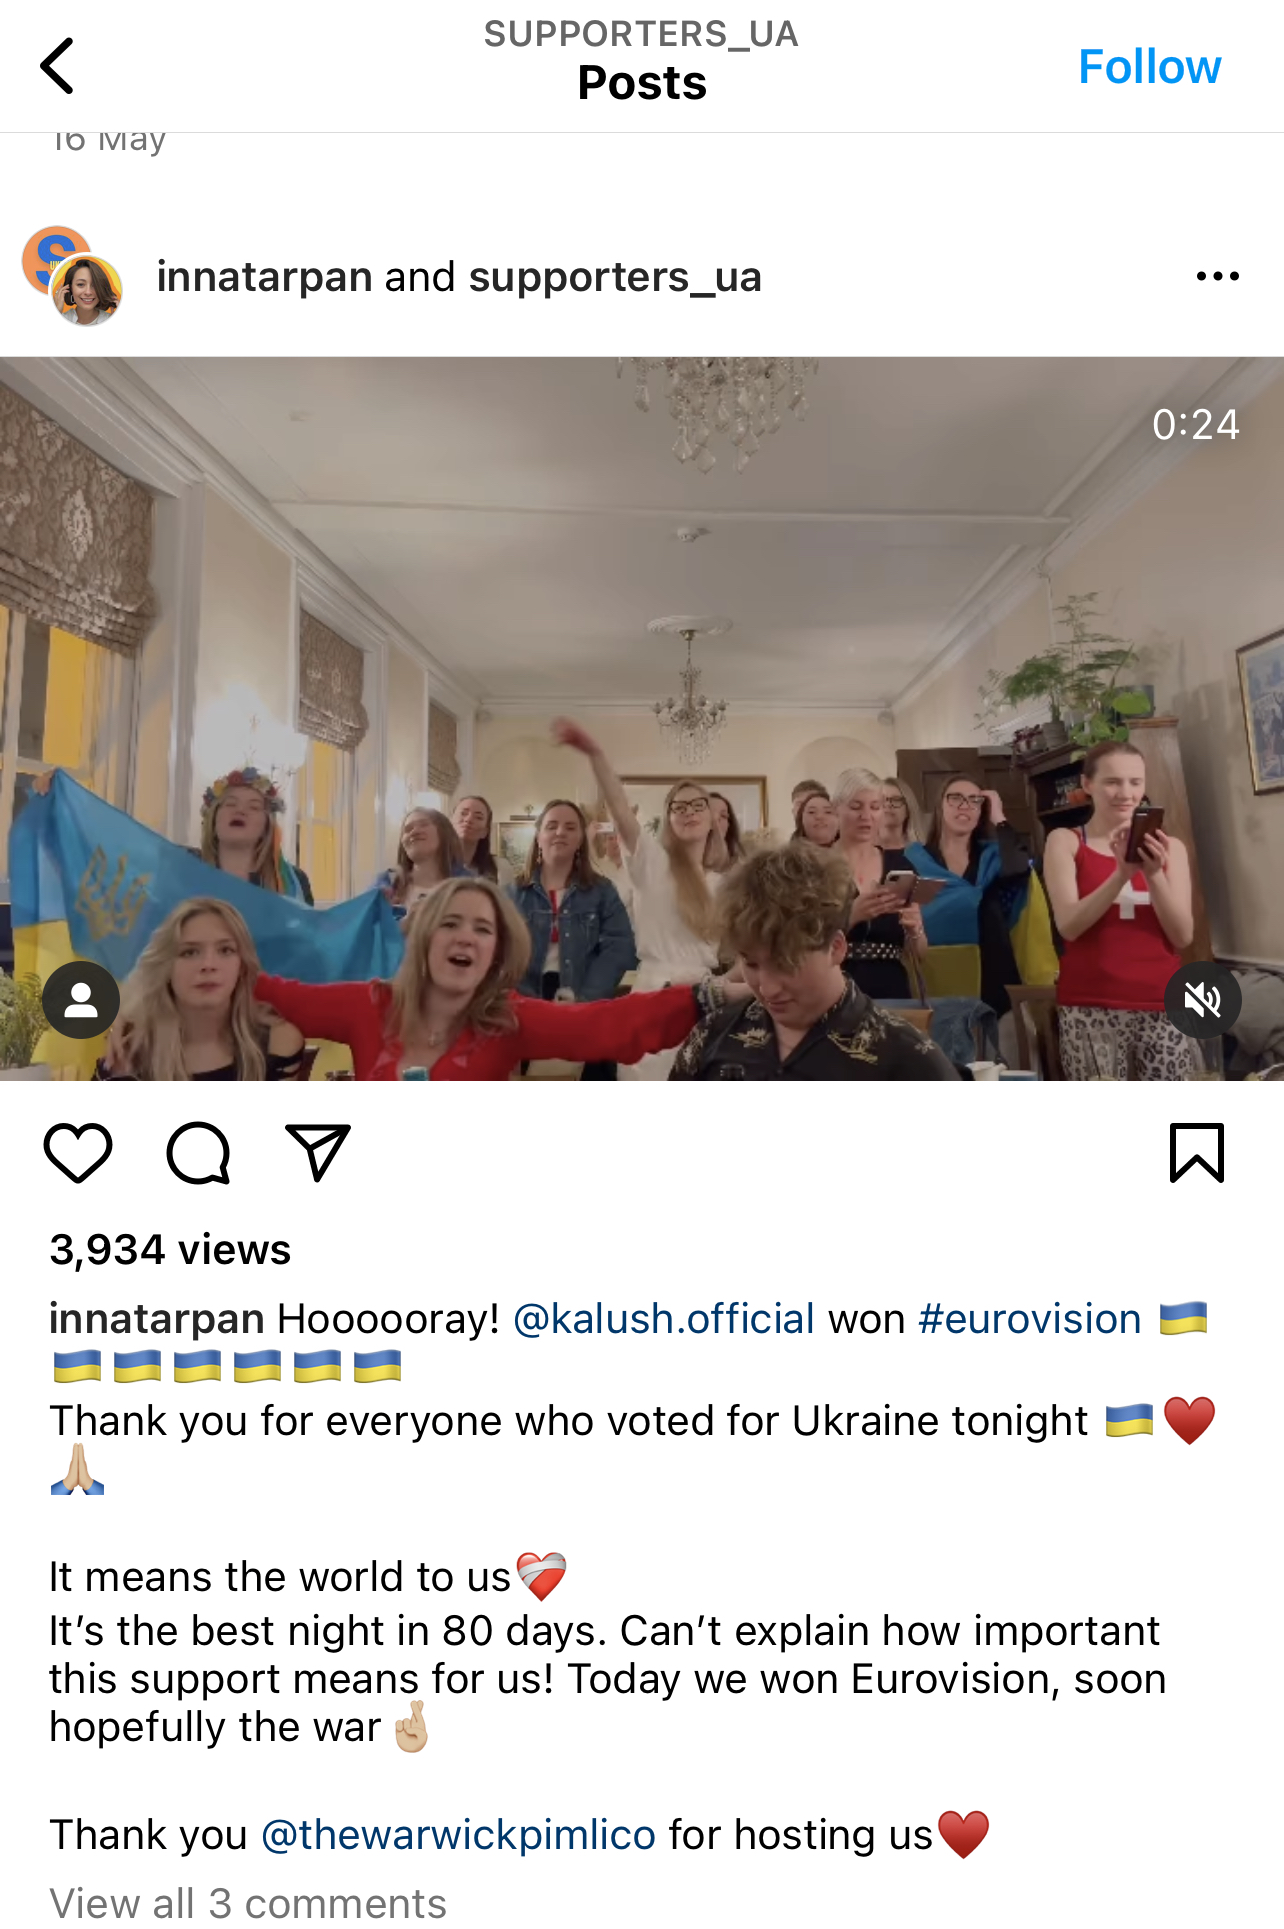 Проукраинская акция Supporters_UA  в пабе The Warwick. Фото © Instagram (запрещён на территории Российской Федерации) / Supporters_UA